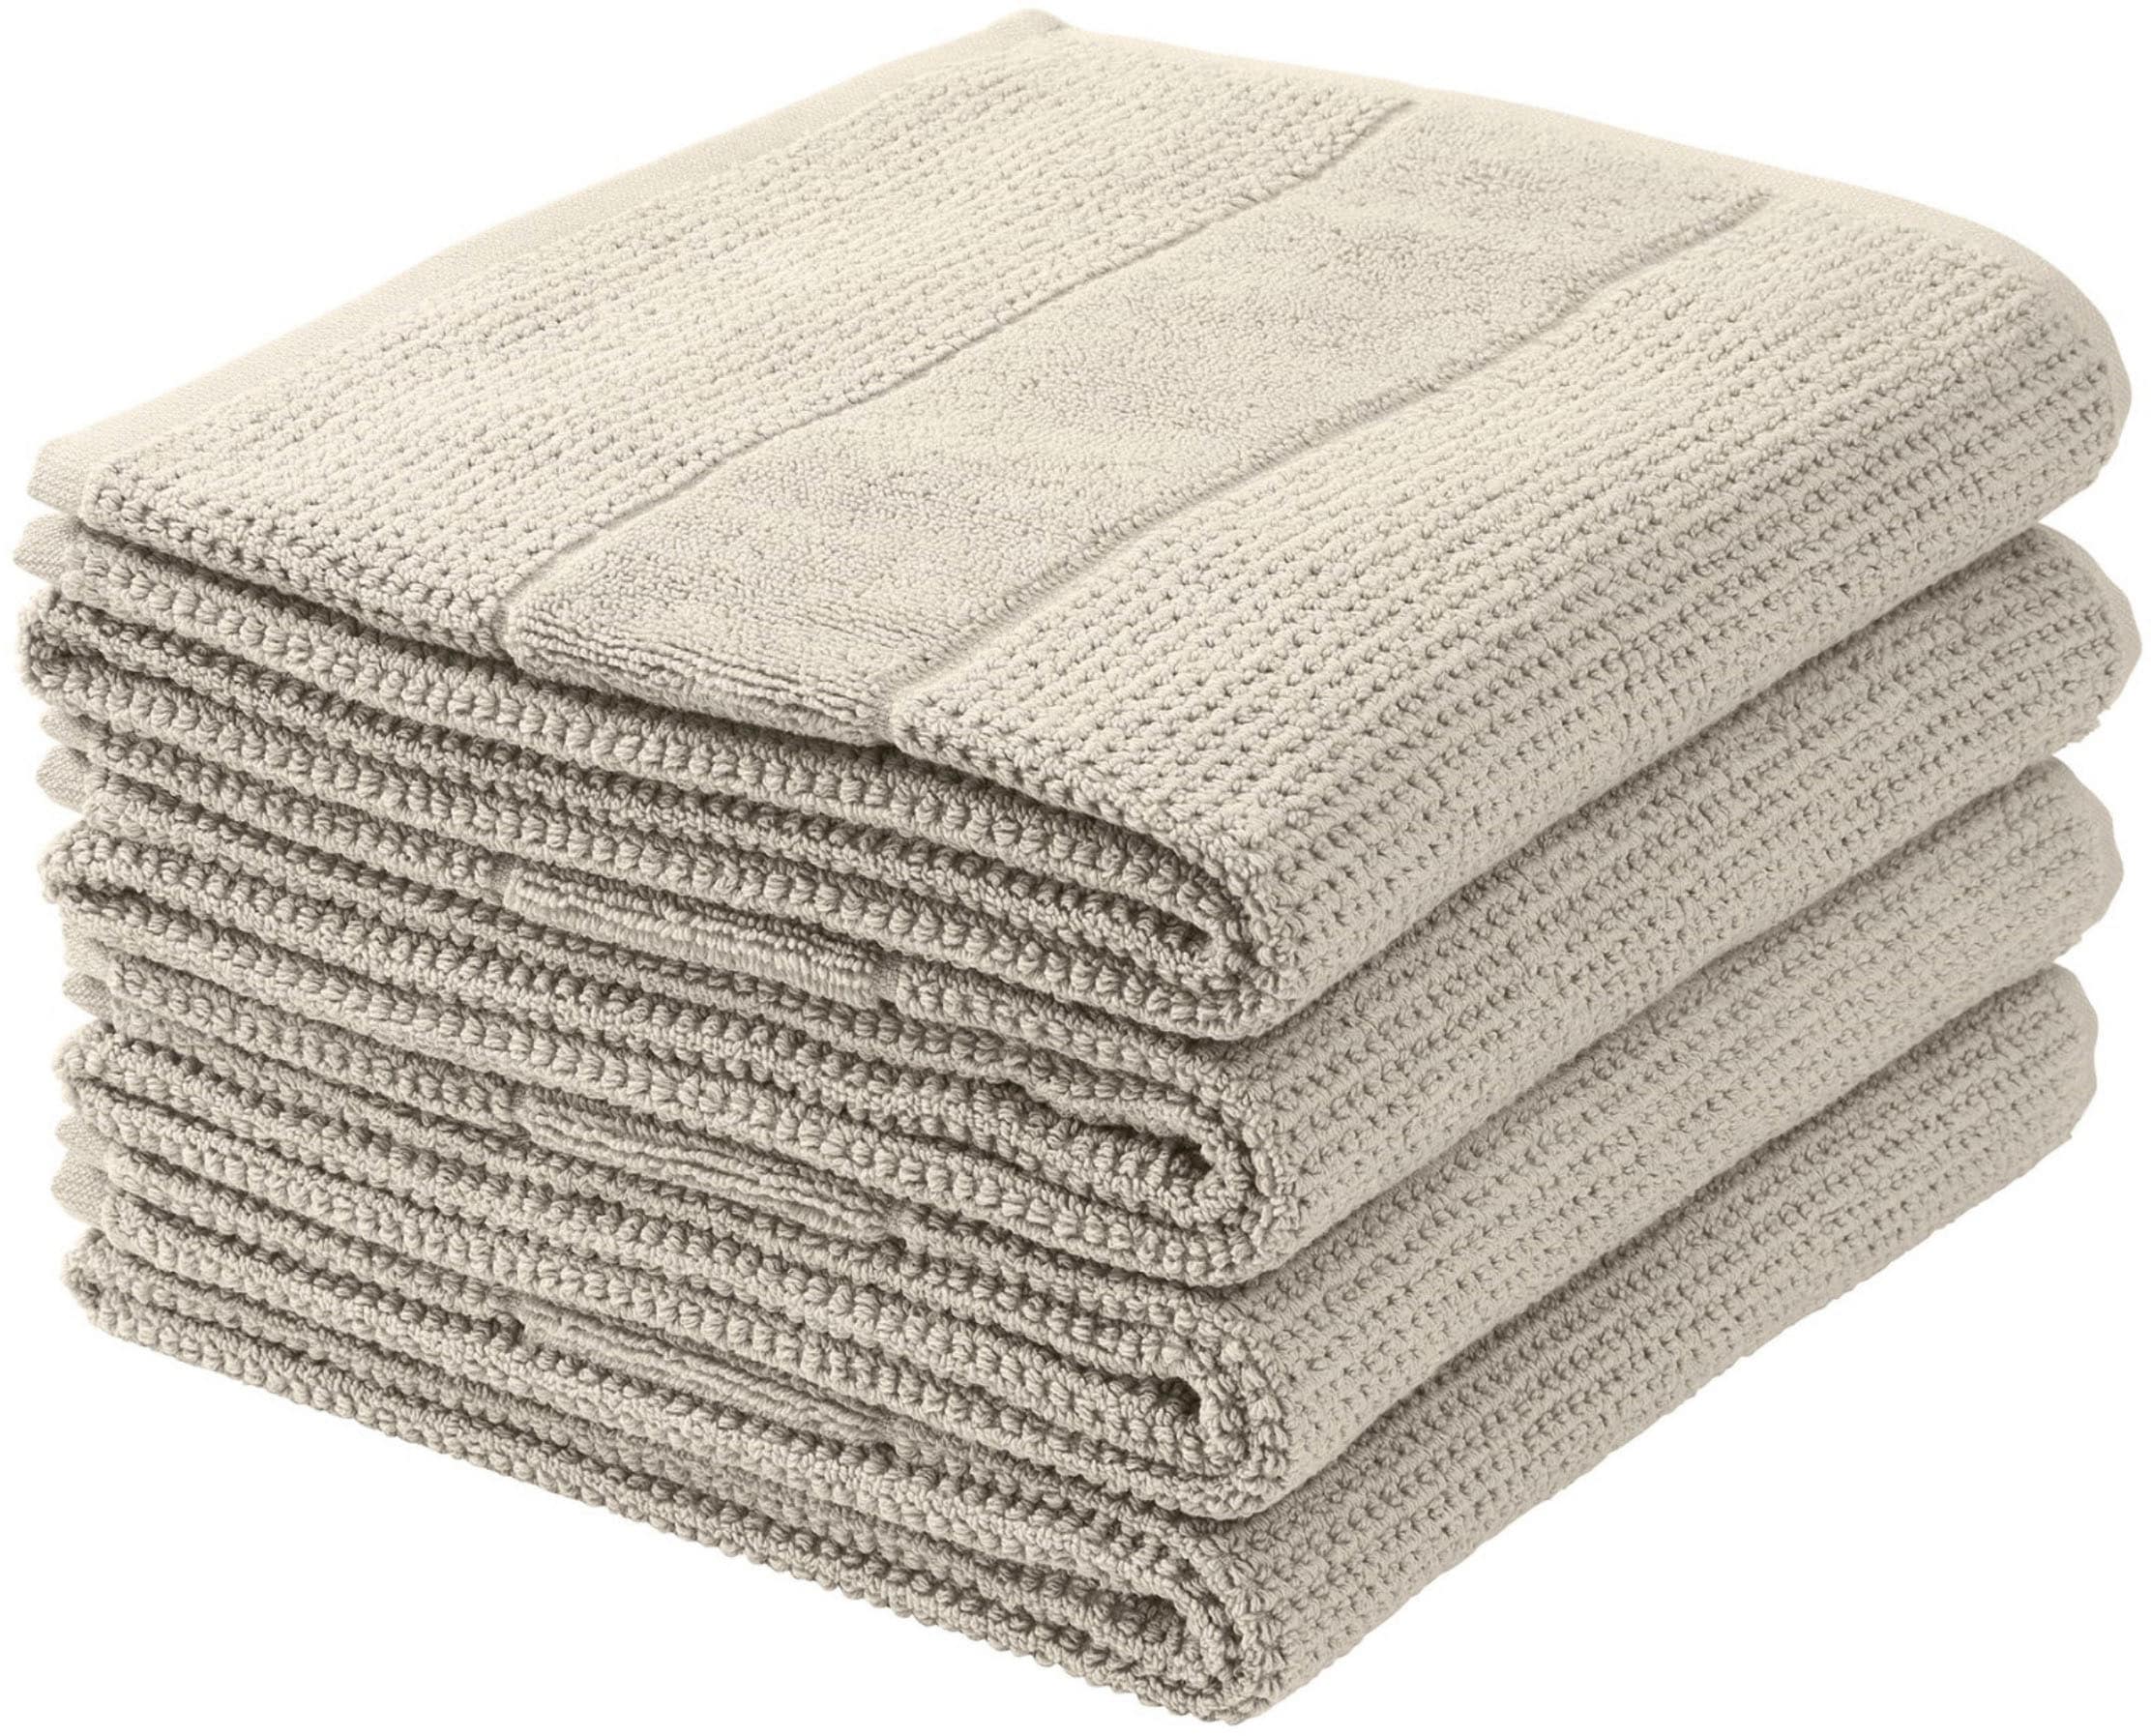 Schiesser Handtücher »Turin im 4er Set aus 100% Baumwolle«, (4 St.),  Reiskorn-Optik, MADE IN GREEN by OEKO-TEX®-zertifiziert